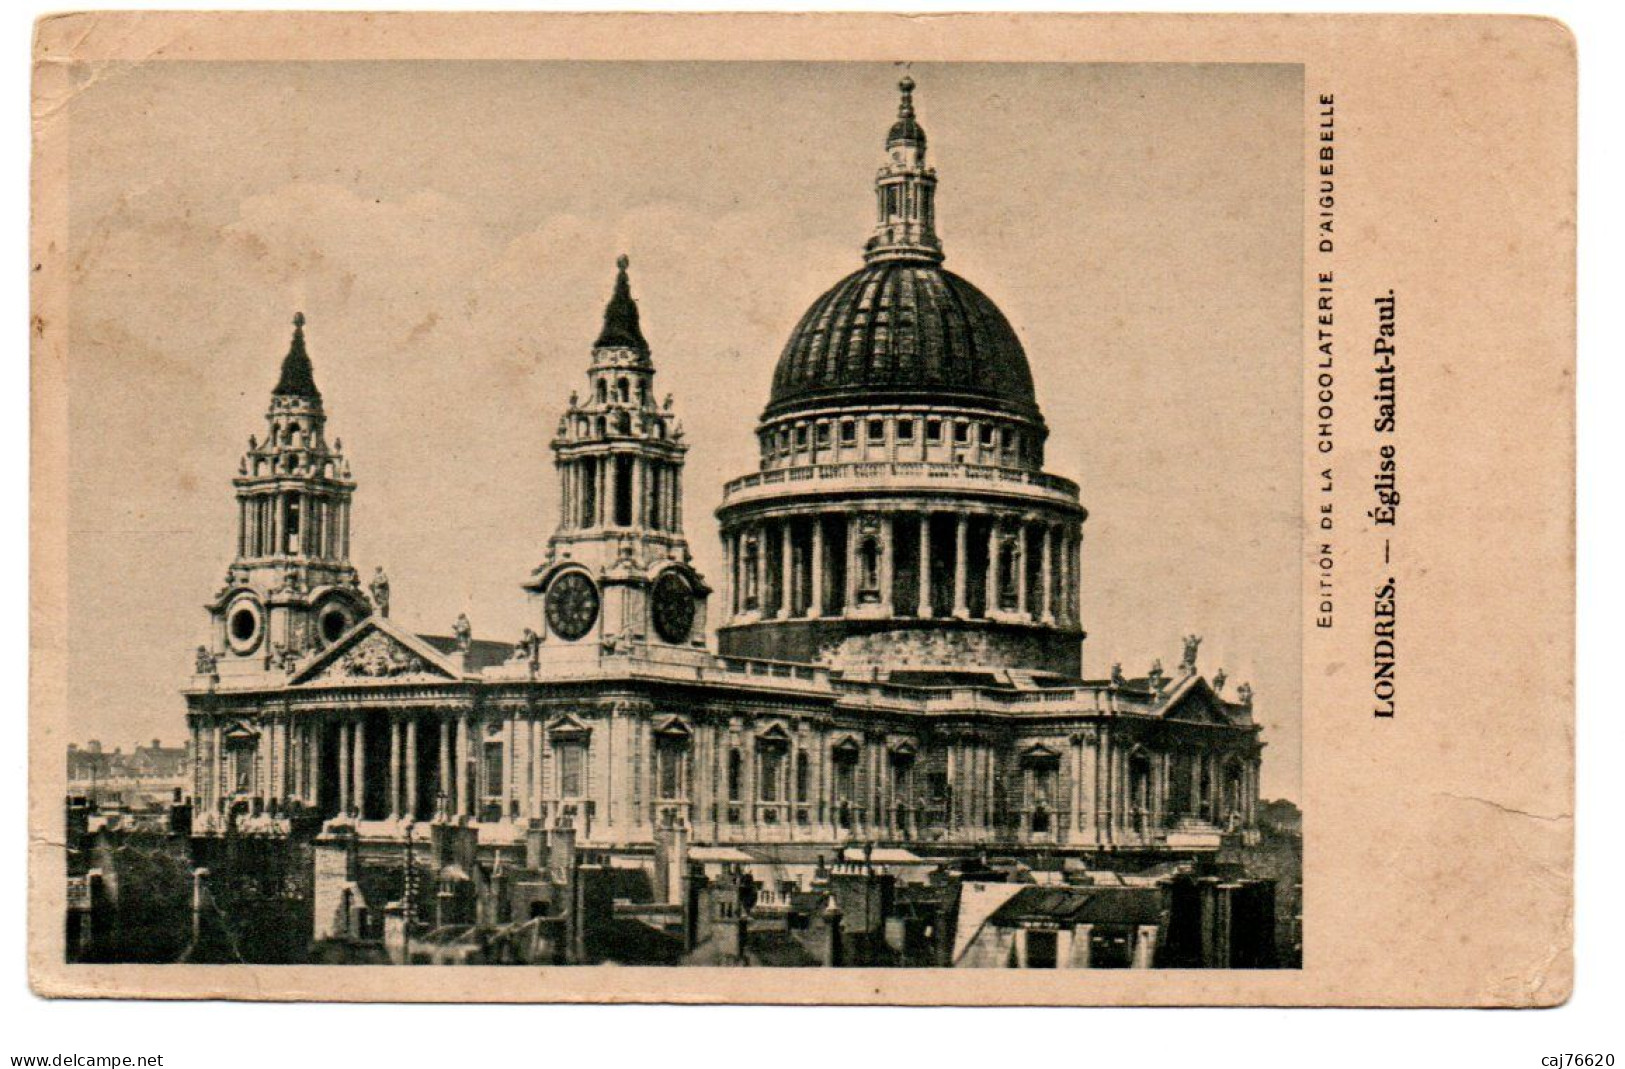 Londres , église Saint Paul ,london - St. Paul's Cathedral